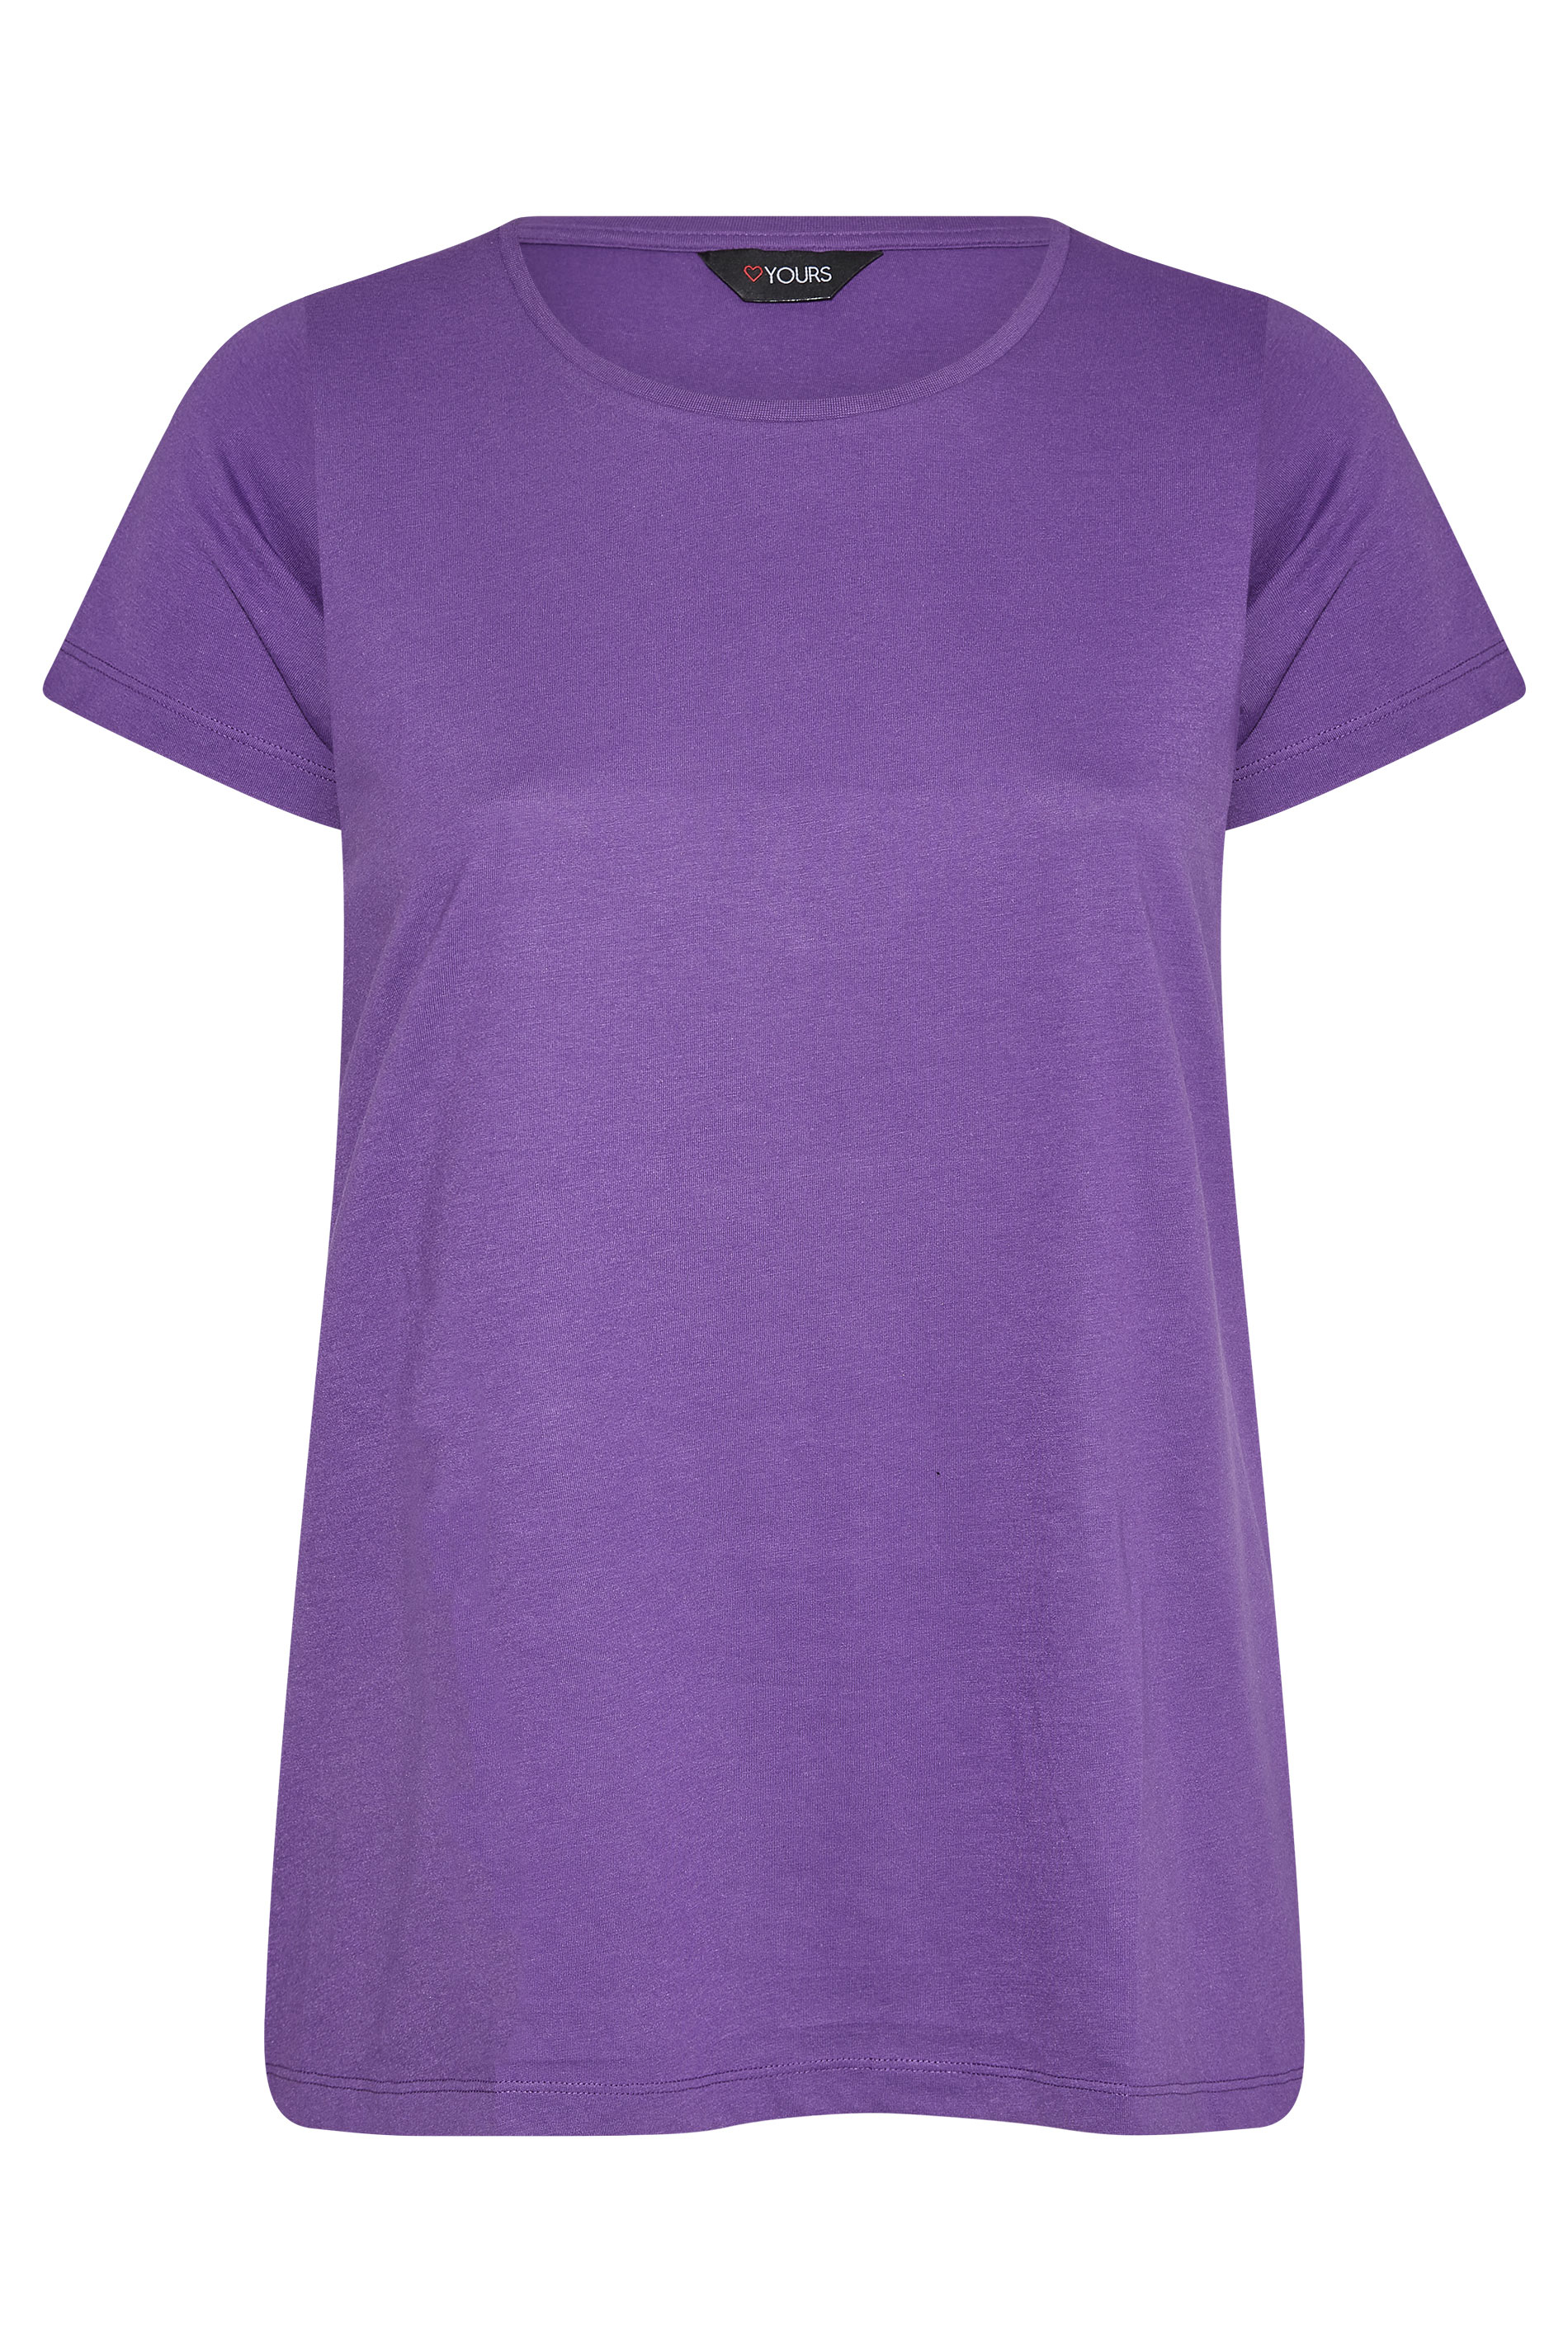 Grande taille  Tops Grande taille  T-Shirts Basiques & Débardeurs | T-Shirt Violet en Jersey - GV45861